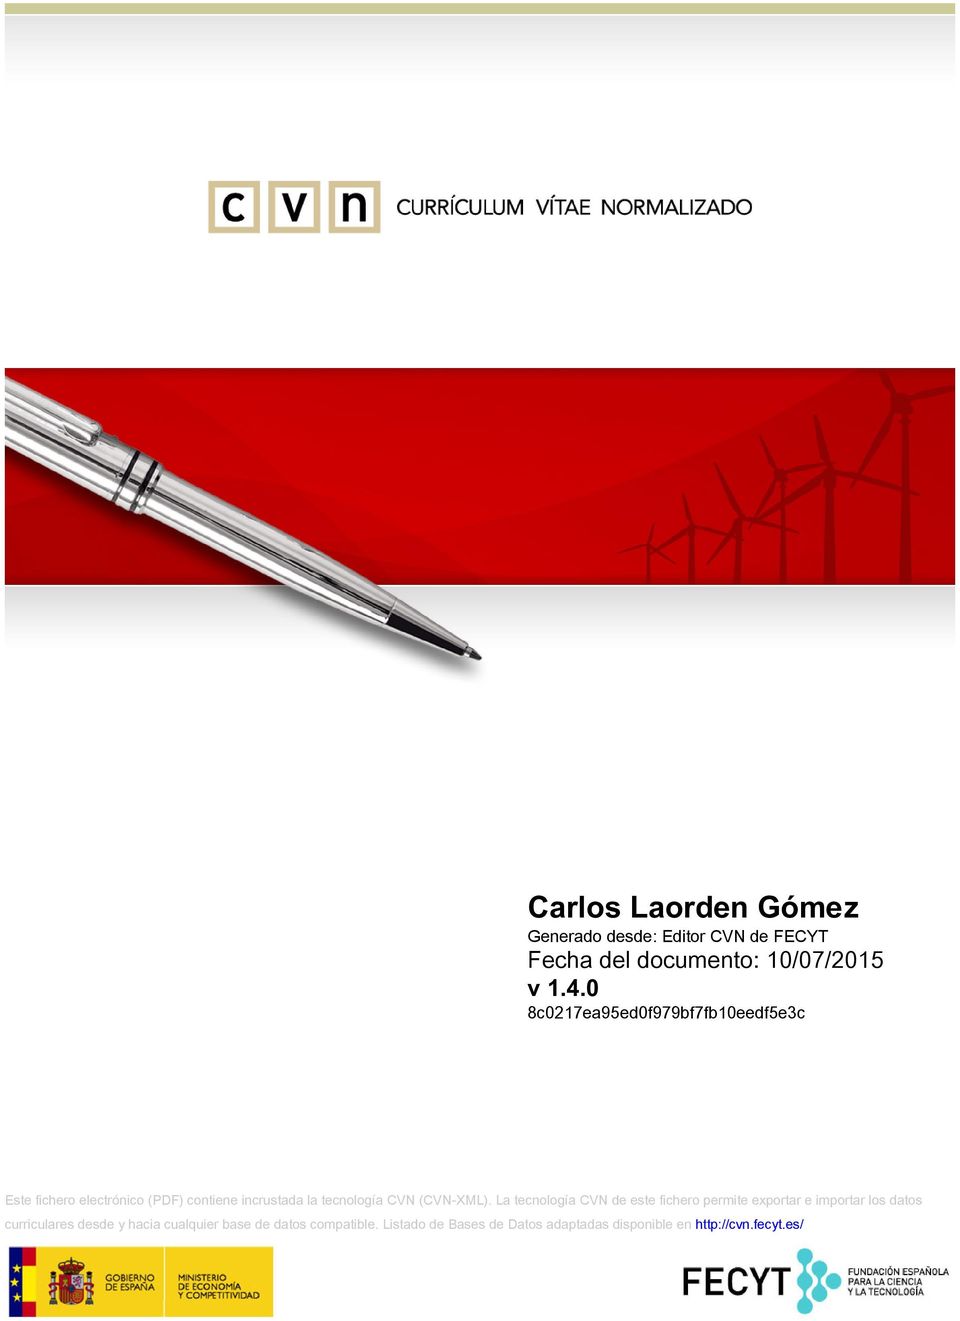 Carlos Laorden Gomez Generado Desde Editor Cvn De Fecyt Fecha Del